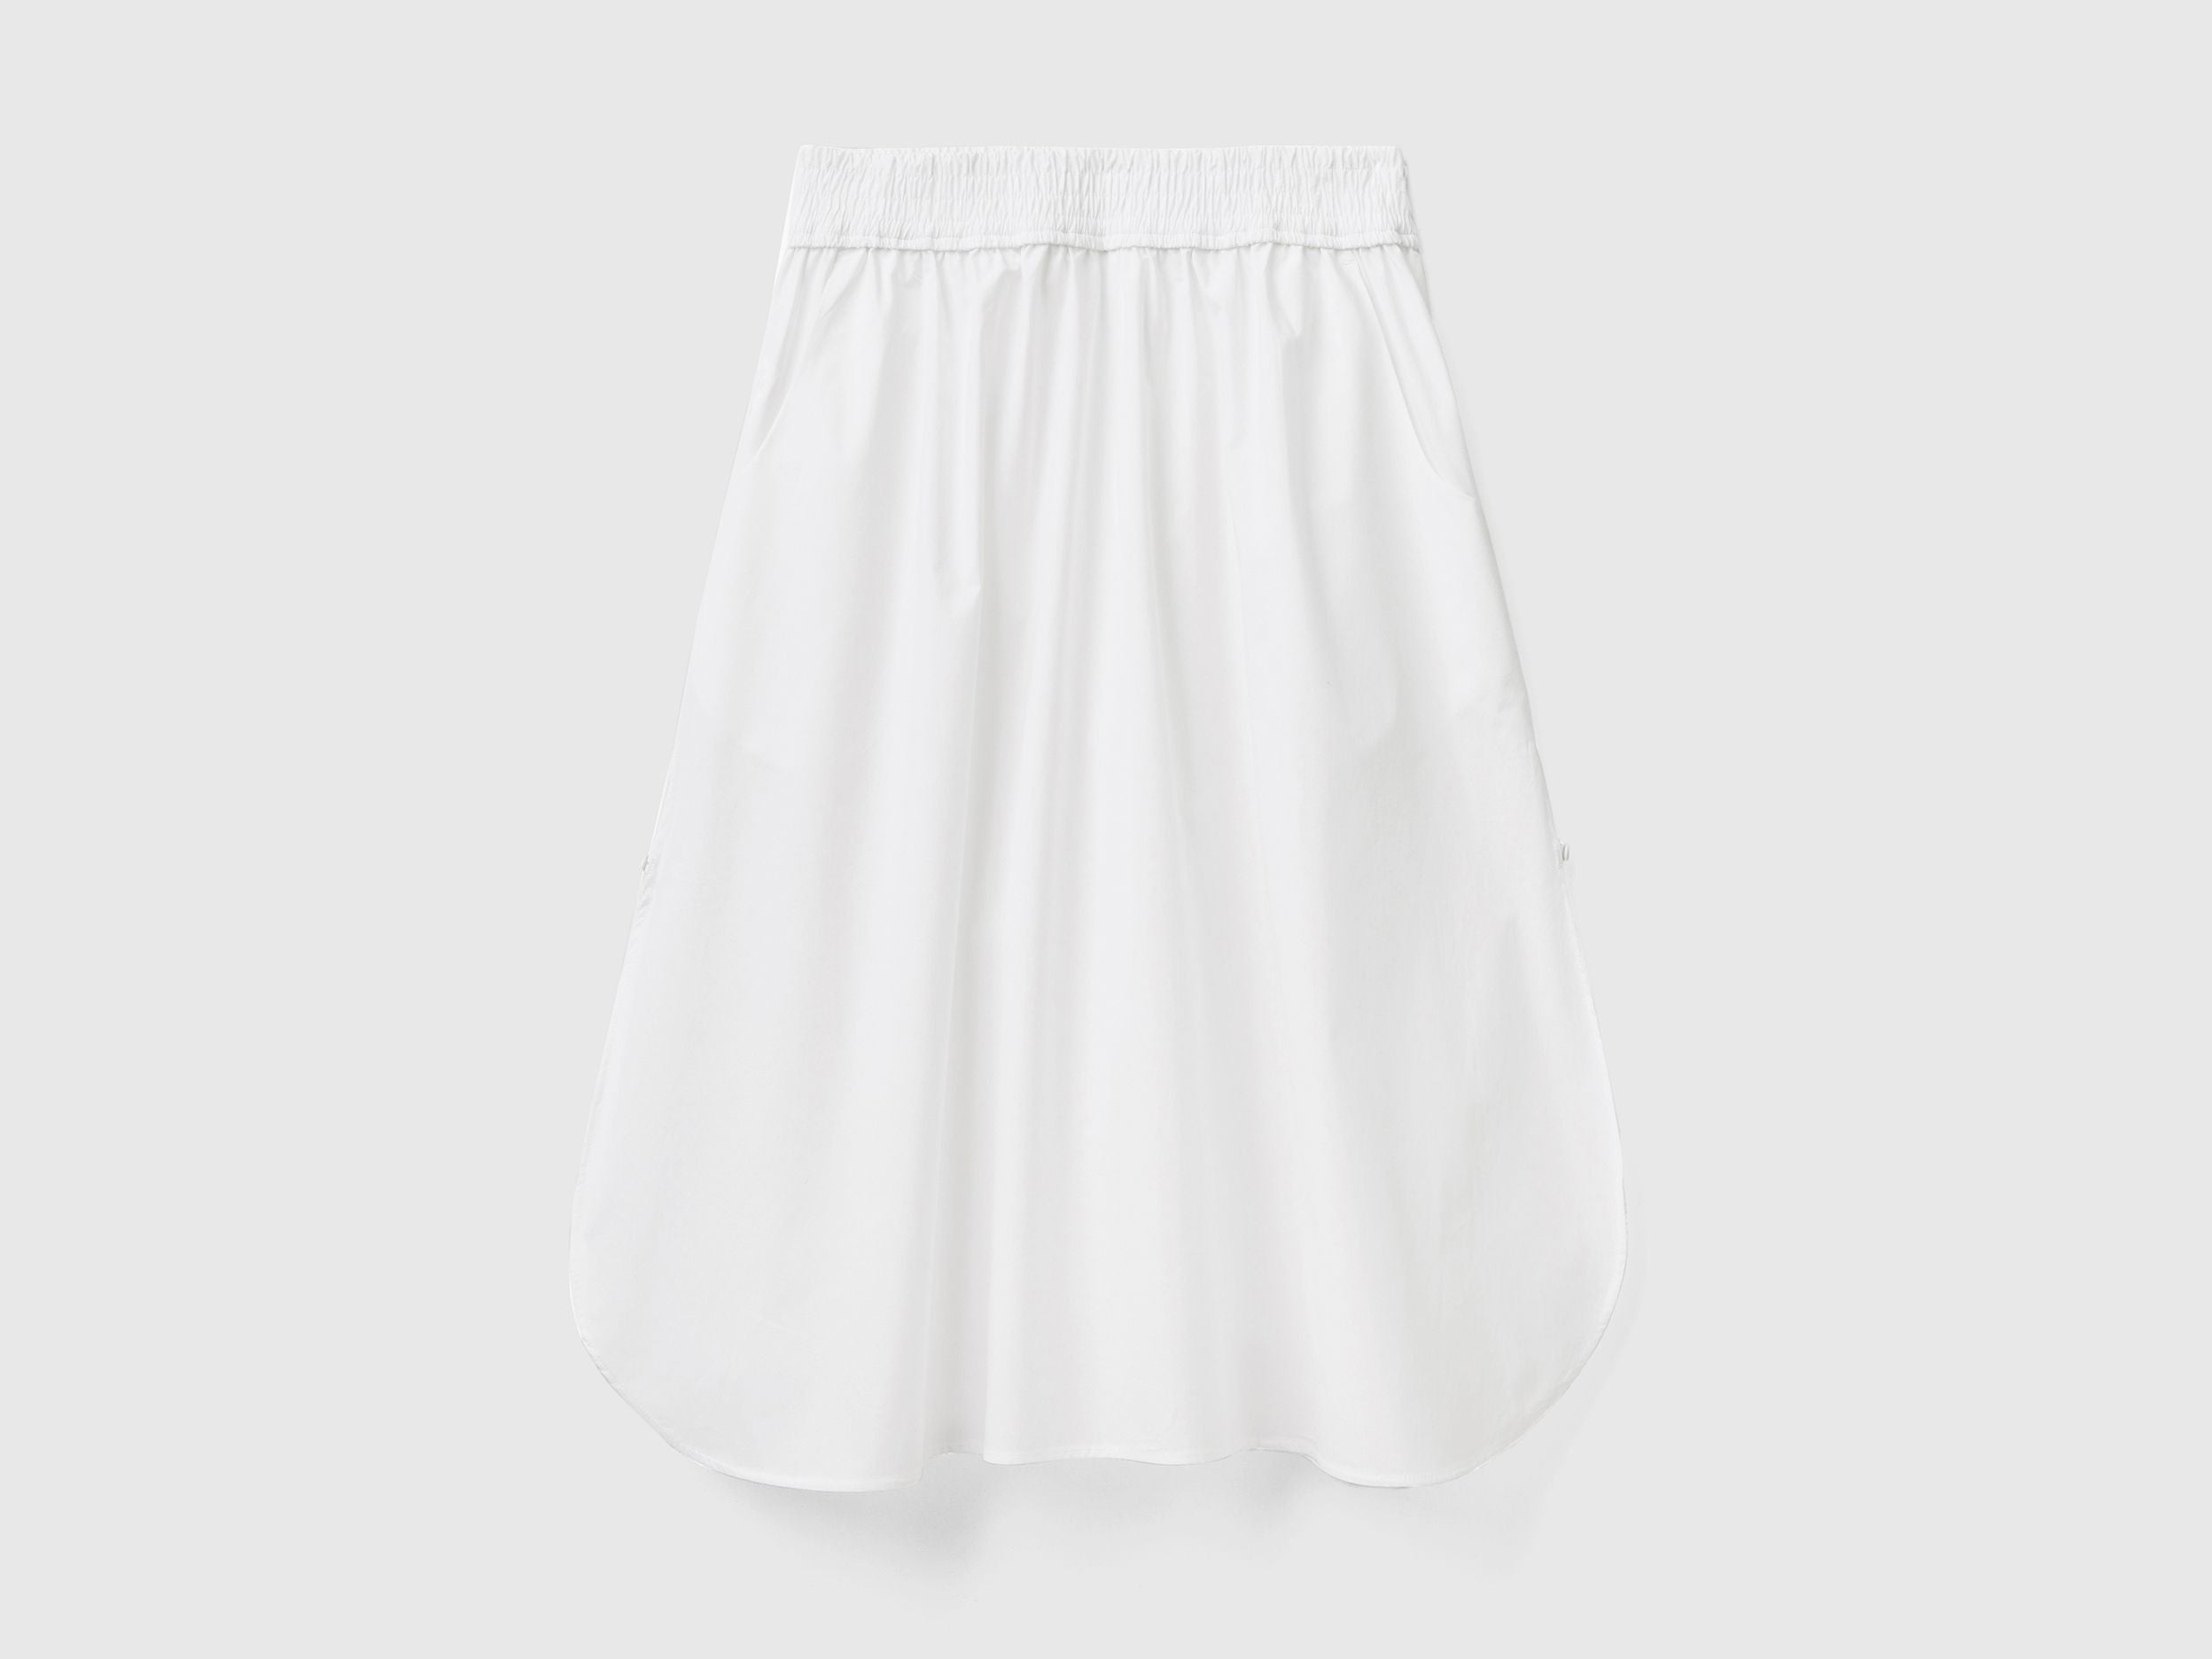 Midi skirt in 100% cotton